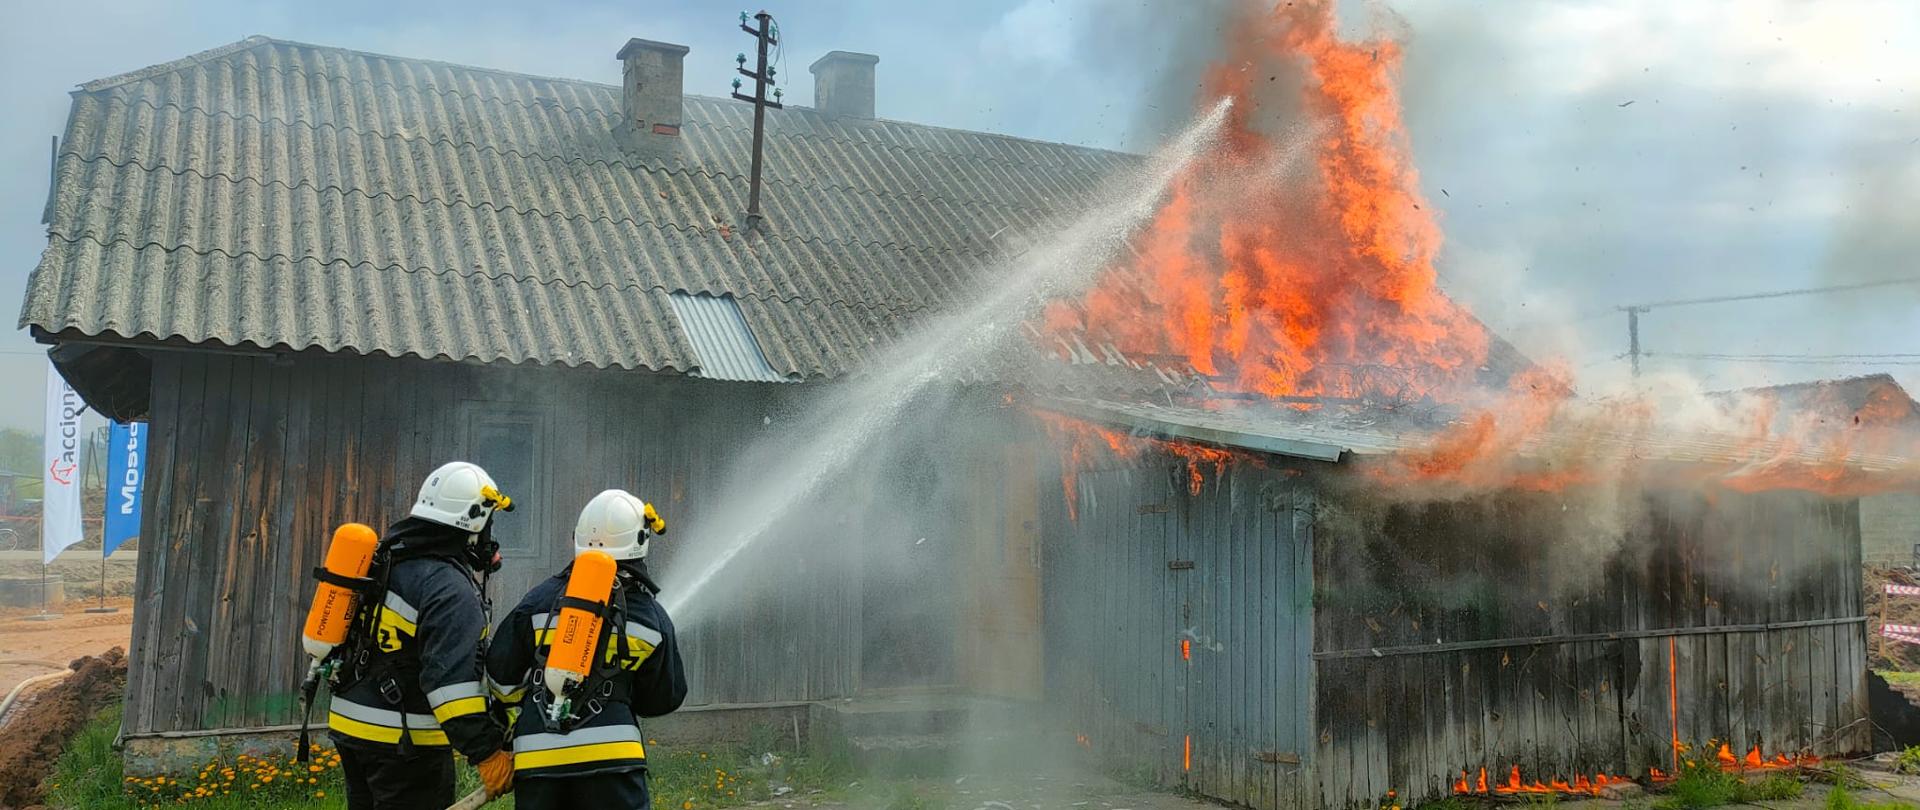 Na zdjęciu widoczny budynek drewniany objęty pożarem. Przed budynkiem dwóch strażaków w ubraniach ochronnych oraz aparatach OUO z linia gaśniczą - gaszą budynek.